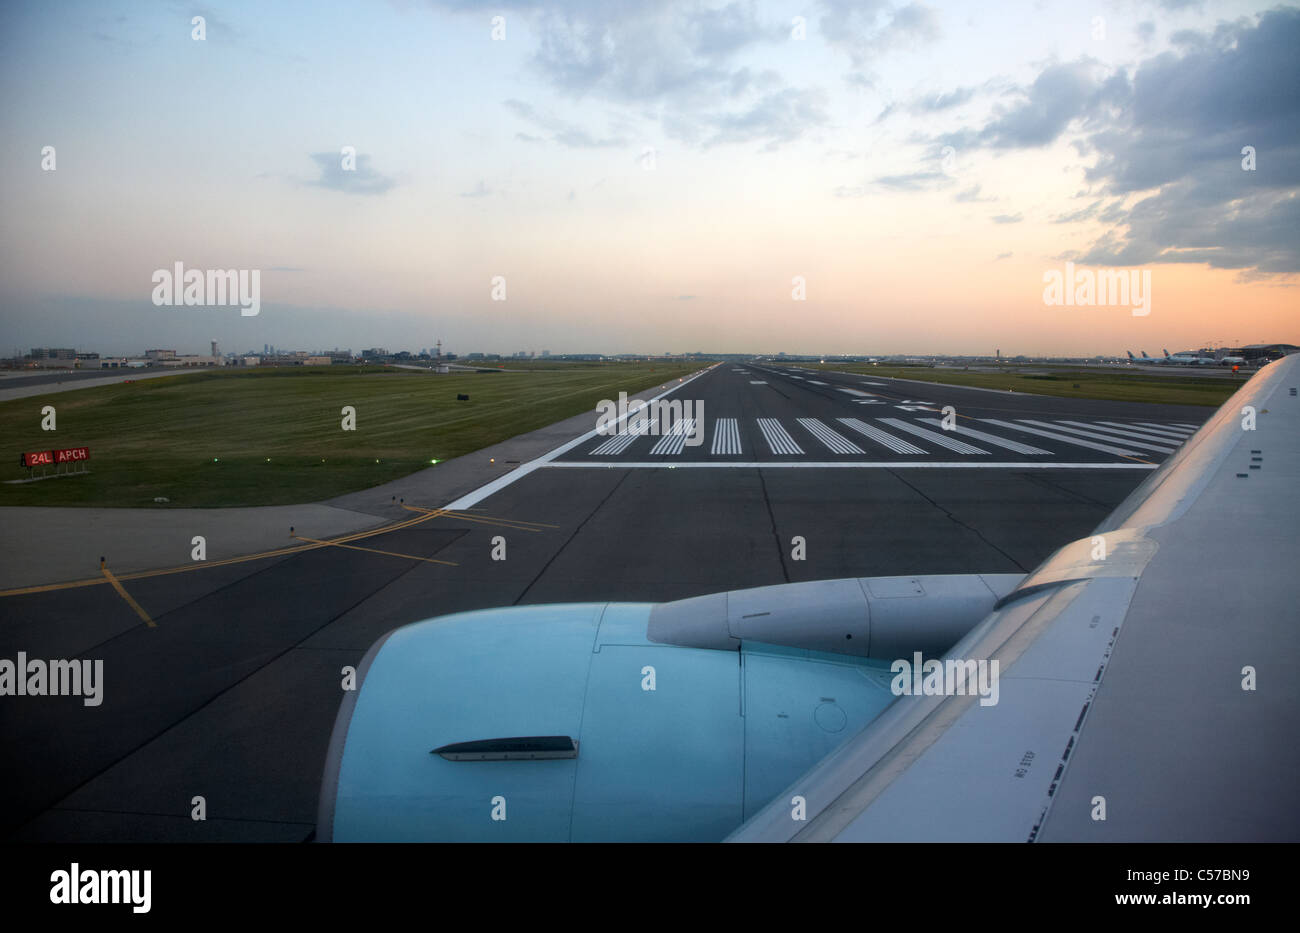 Los aviones de air canada pasado de rodadura pista de aterrizaje en el Aeropuerto Internacional Lester B. Pearson de Toronto Ontario Canada Foto de stock